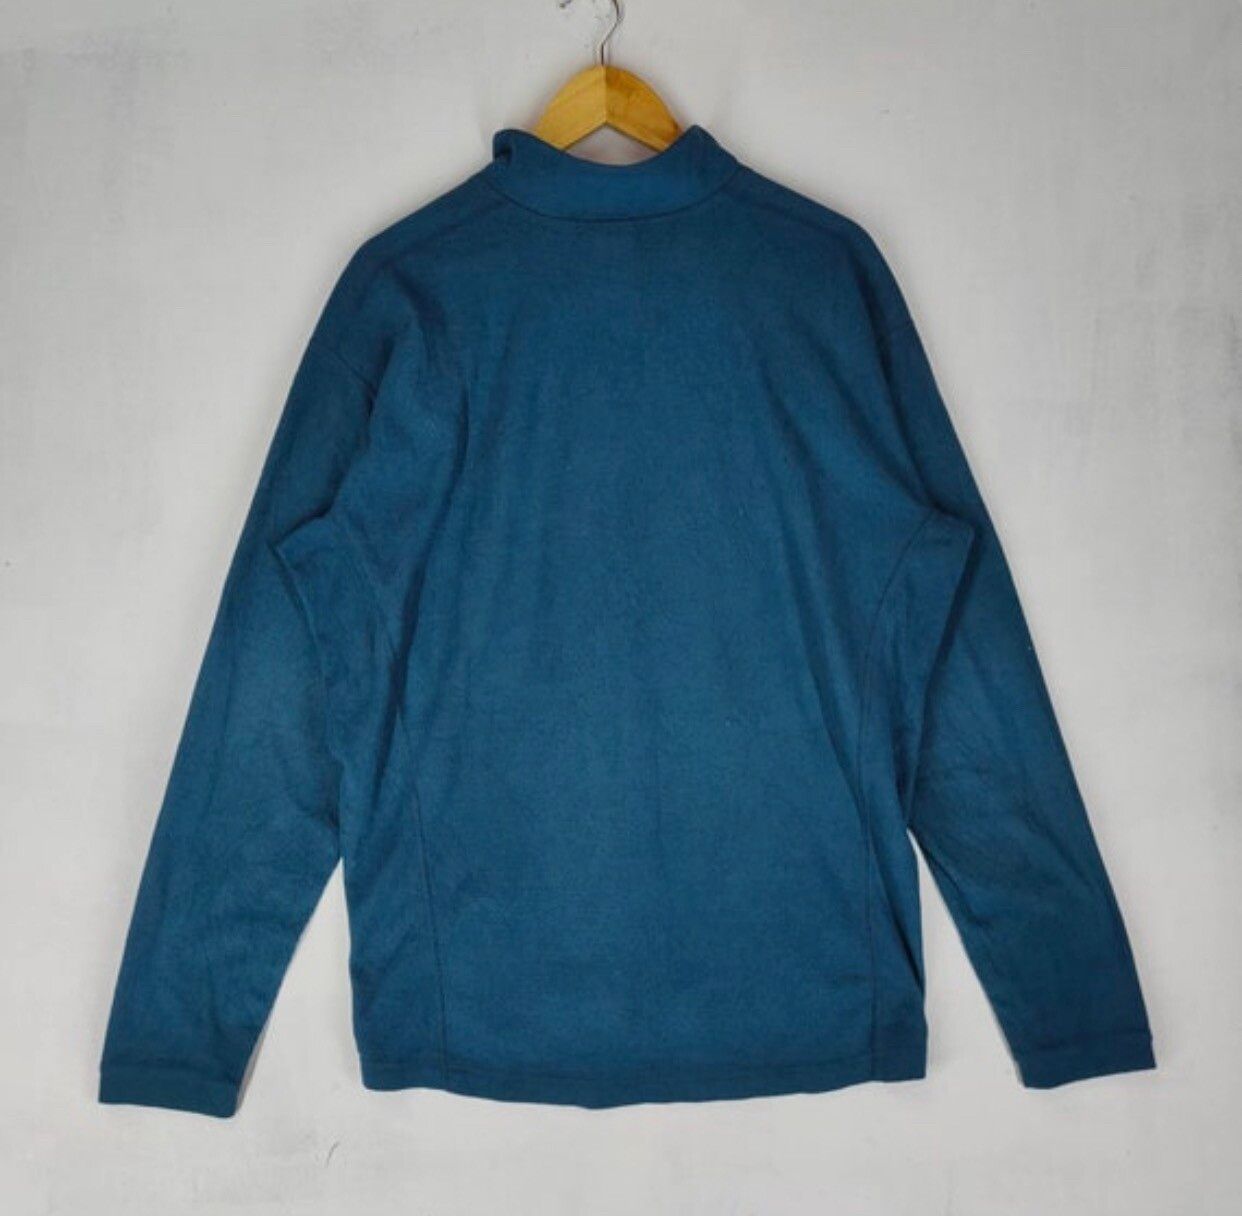 Vintage ARC’TERYX CANADA POLARTEC Lightweight Sweater - 4